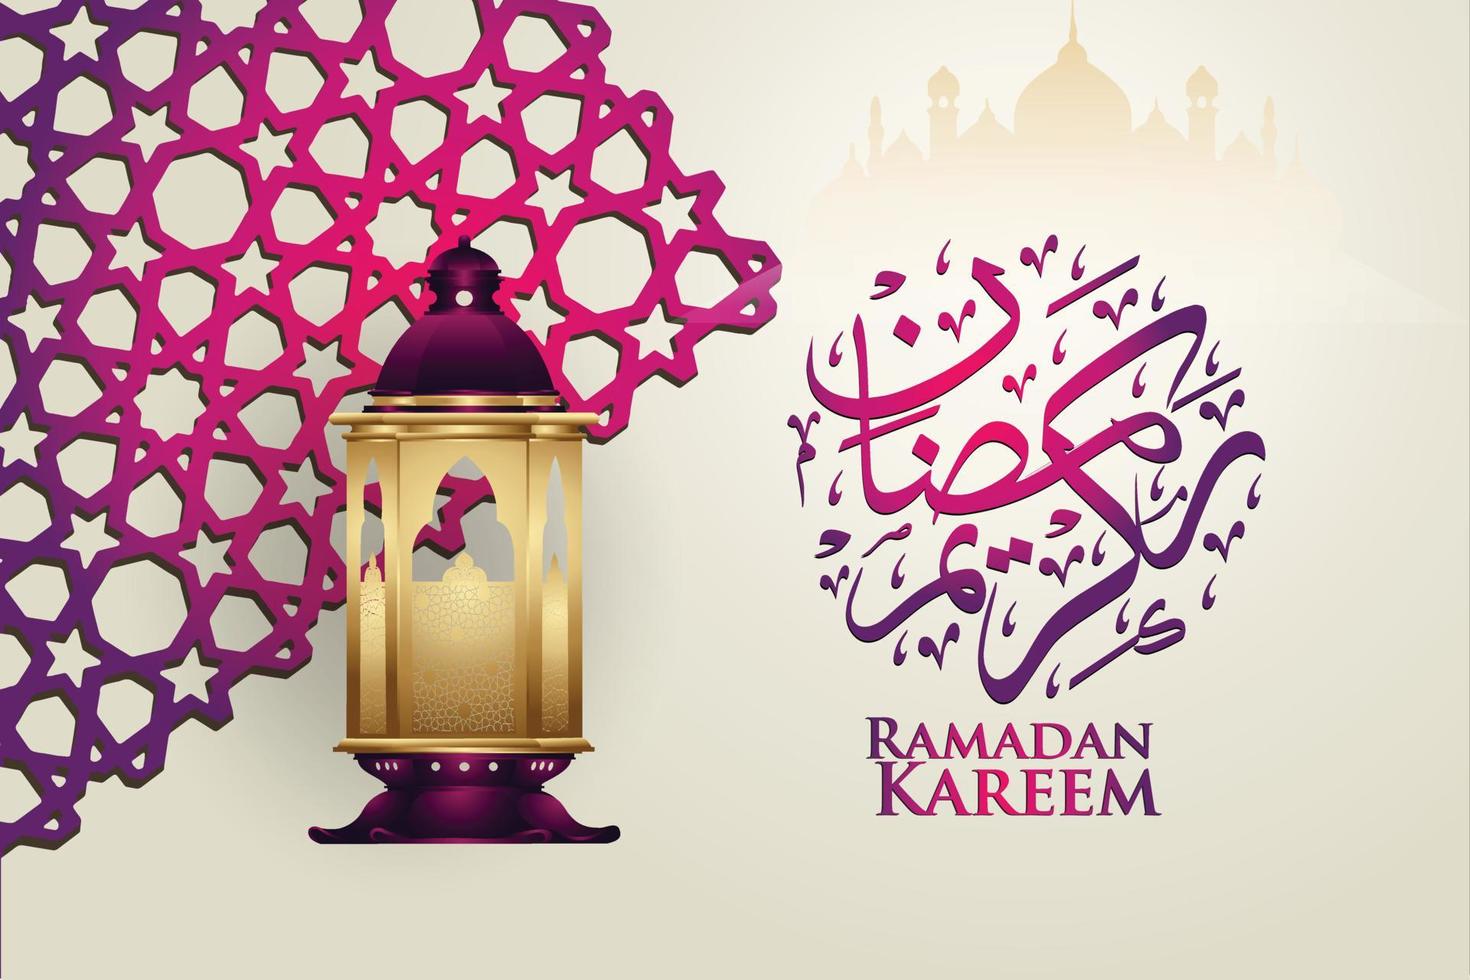 design luxuoso e elegante ramadan kareem com caligrafia árabe, lanterna tradicional e detalhe colorido ornamental islâmico de mosaico para ilustração islâmica saudação.vector. vetor